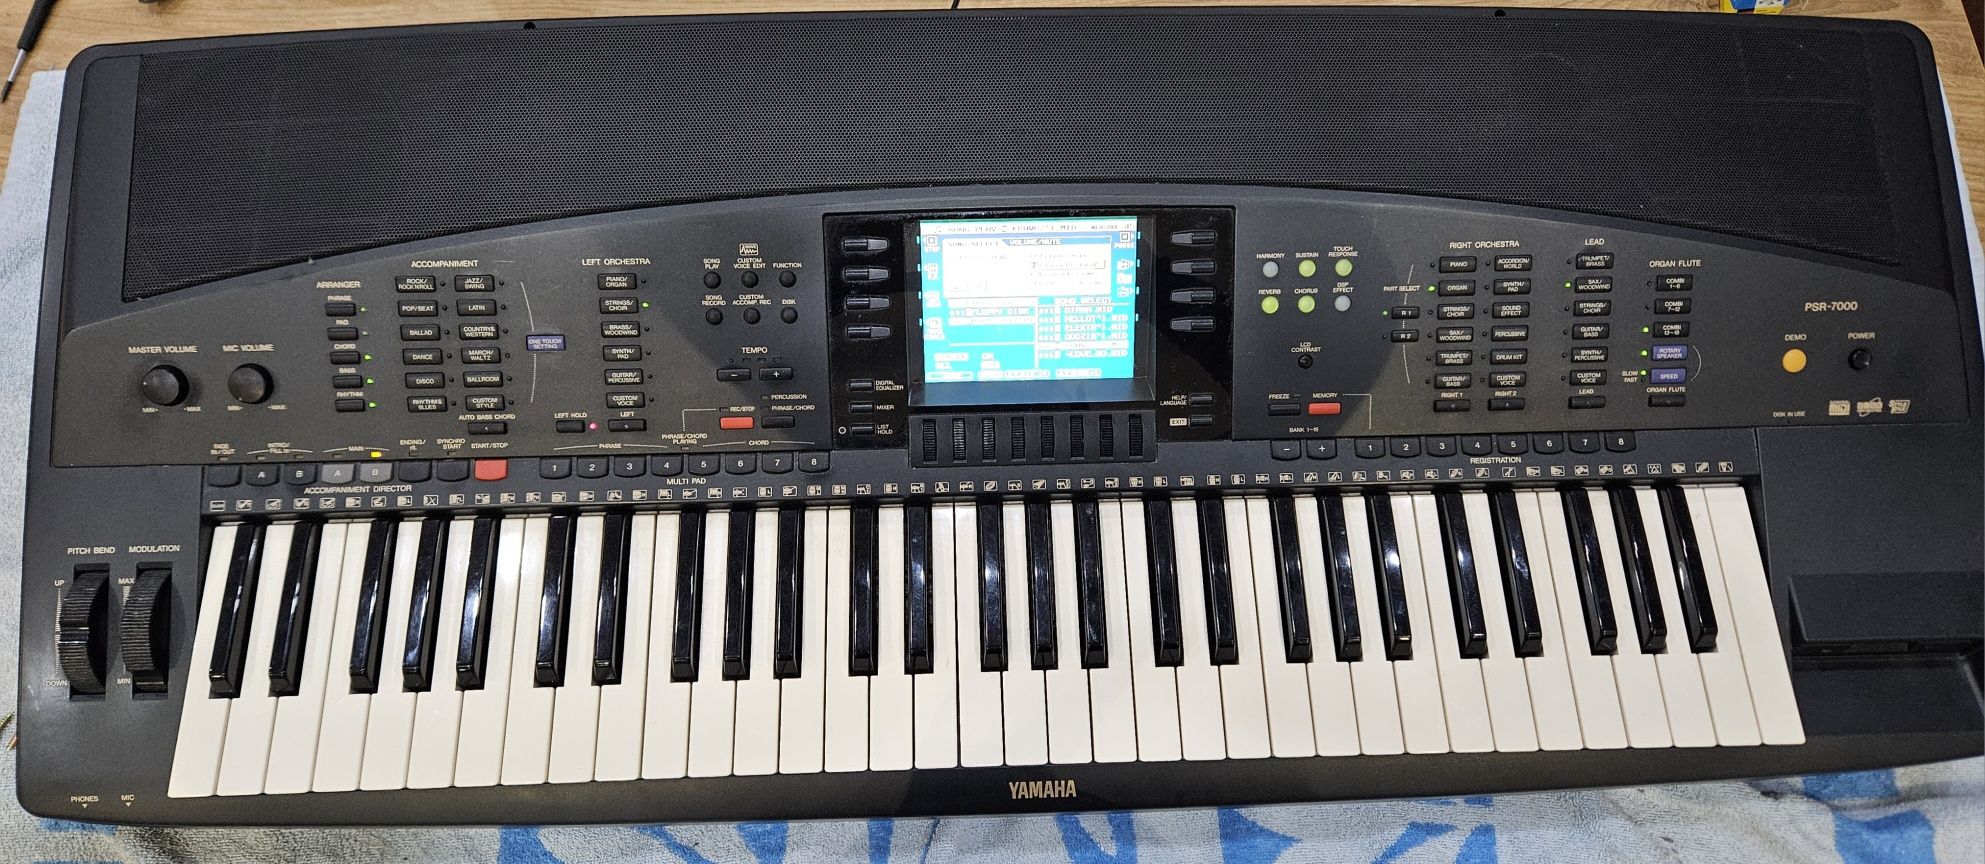 Keyboard Yamaha psr 7000